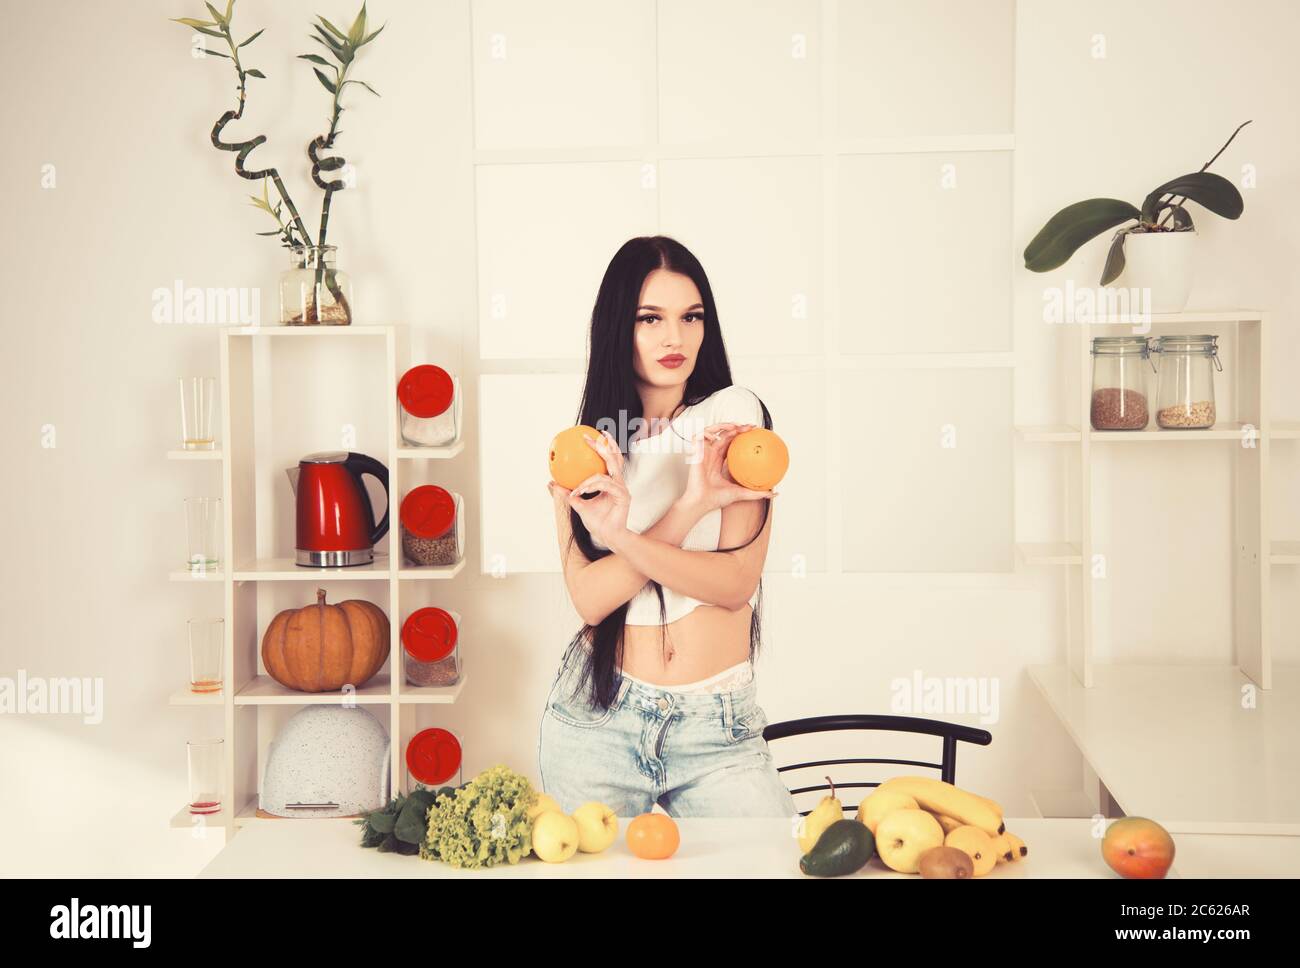 Placez la sportswoman tenant l'orange près des fruits, des légumes et du ruban de mesure sur la table de cuisine, régime de comptage des calories. Banque D'Images